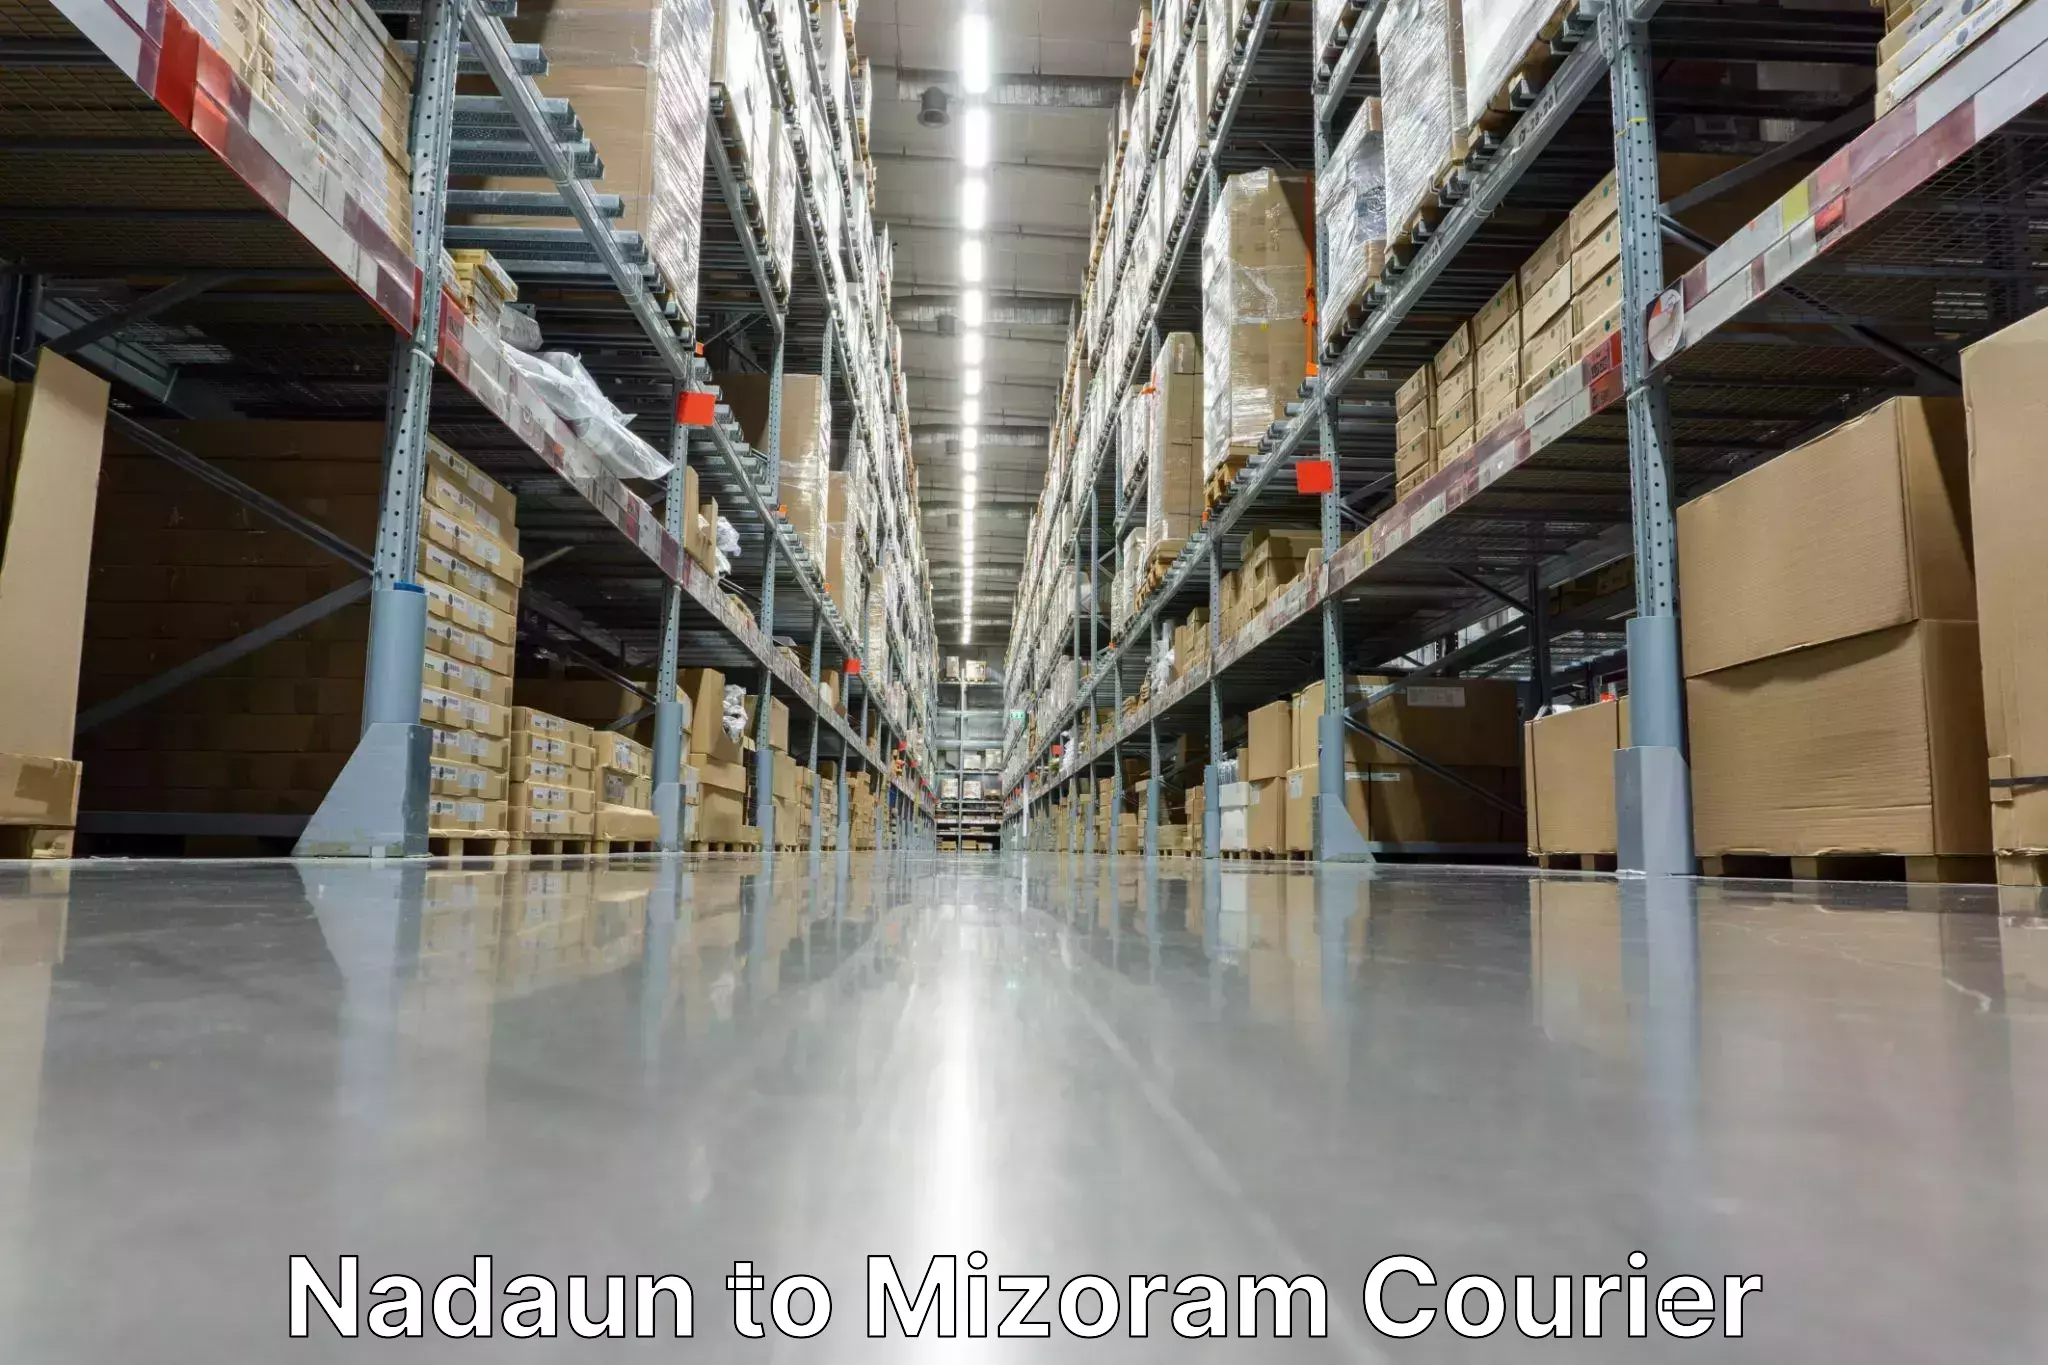 Courier service innovation Nadaun to Mizoram